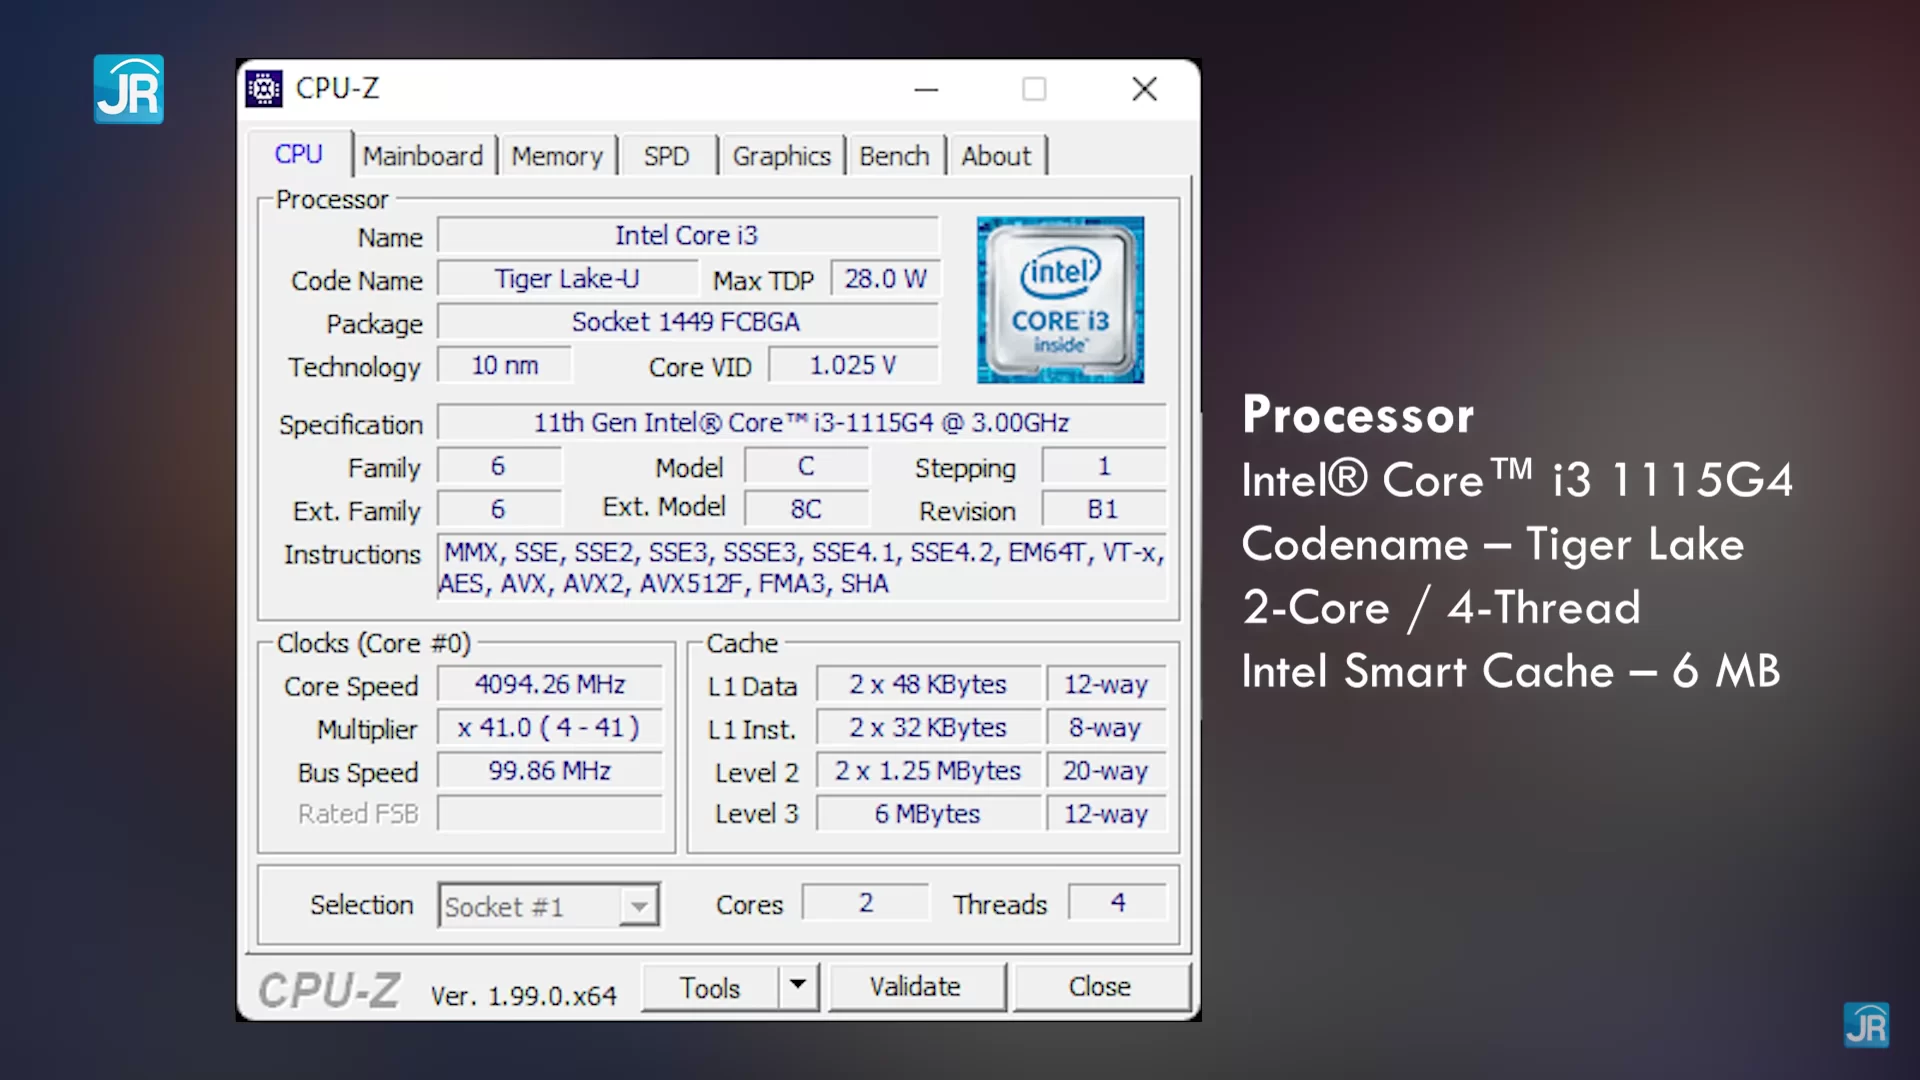 Intel core i3 1115g4 3. Intel Core i3 1115g4 in CPU-Z. Intel Core i3 1115g4 характеристики. Процессор Intel i3-1115g4. Core i3-1115g4.